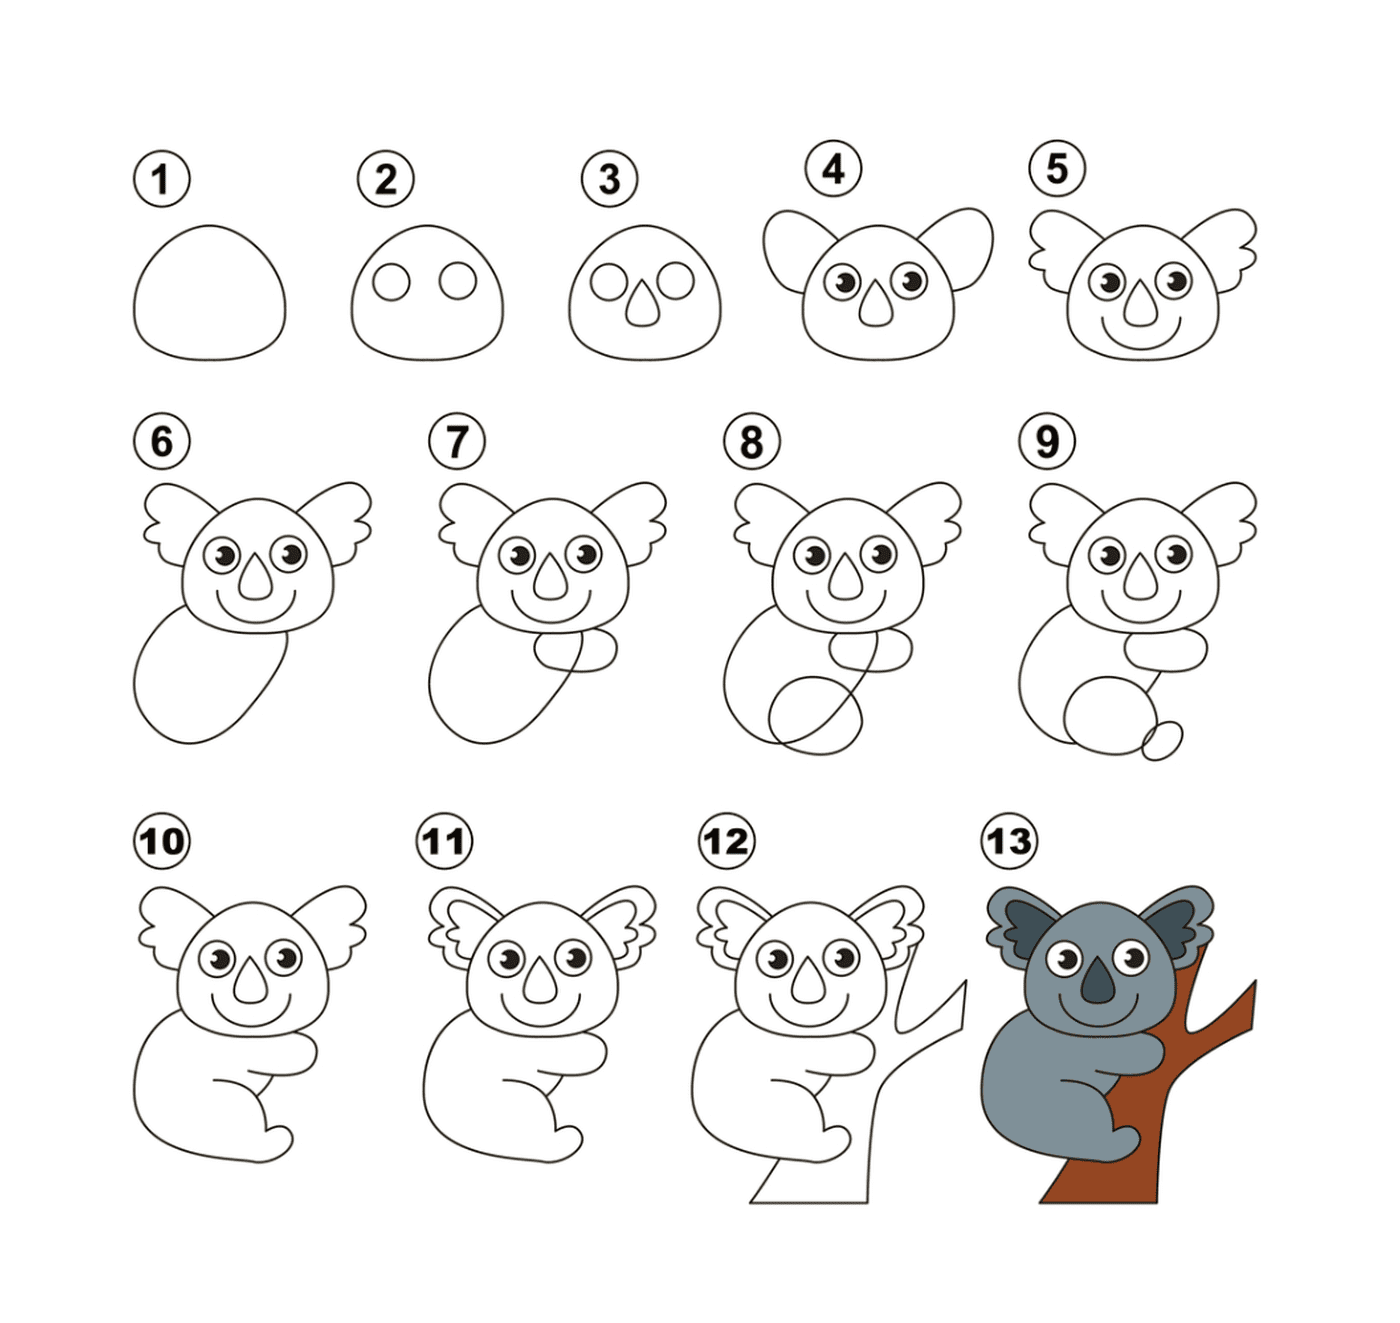  How to draw a koala easily 